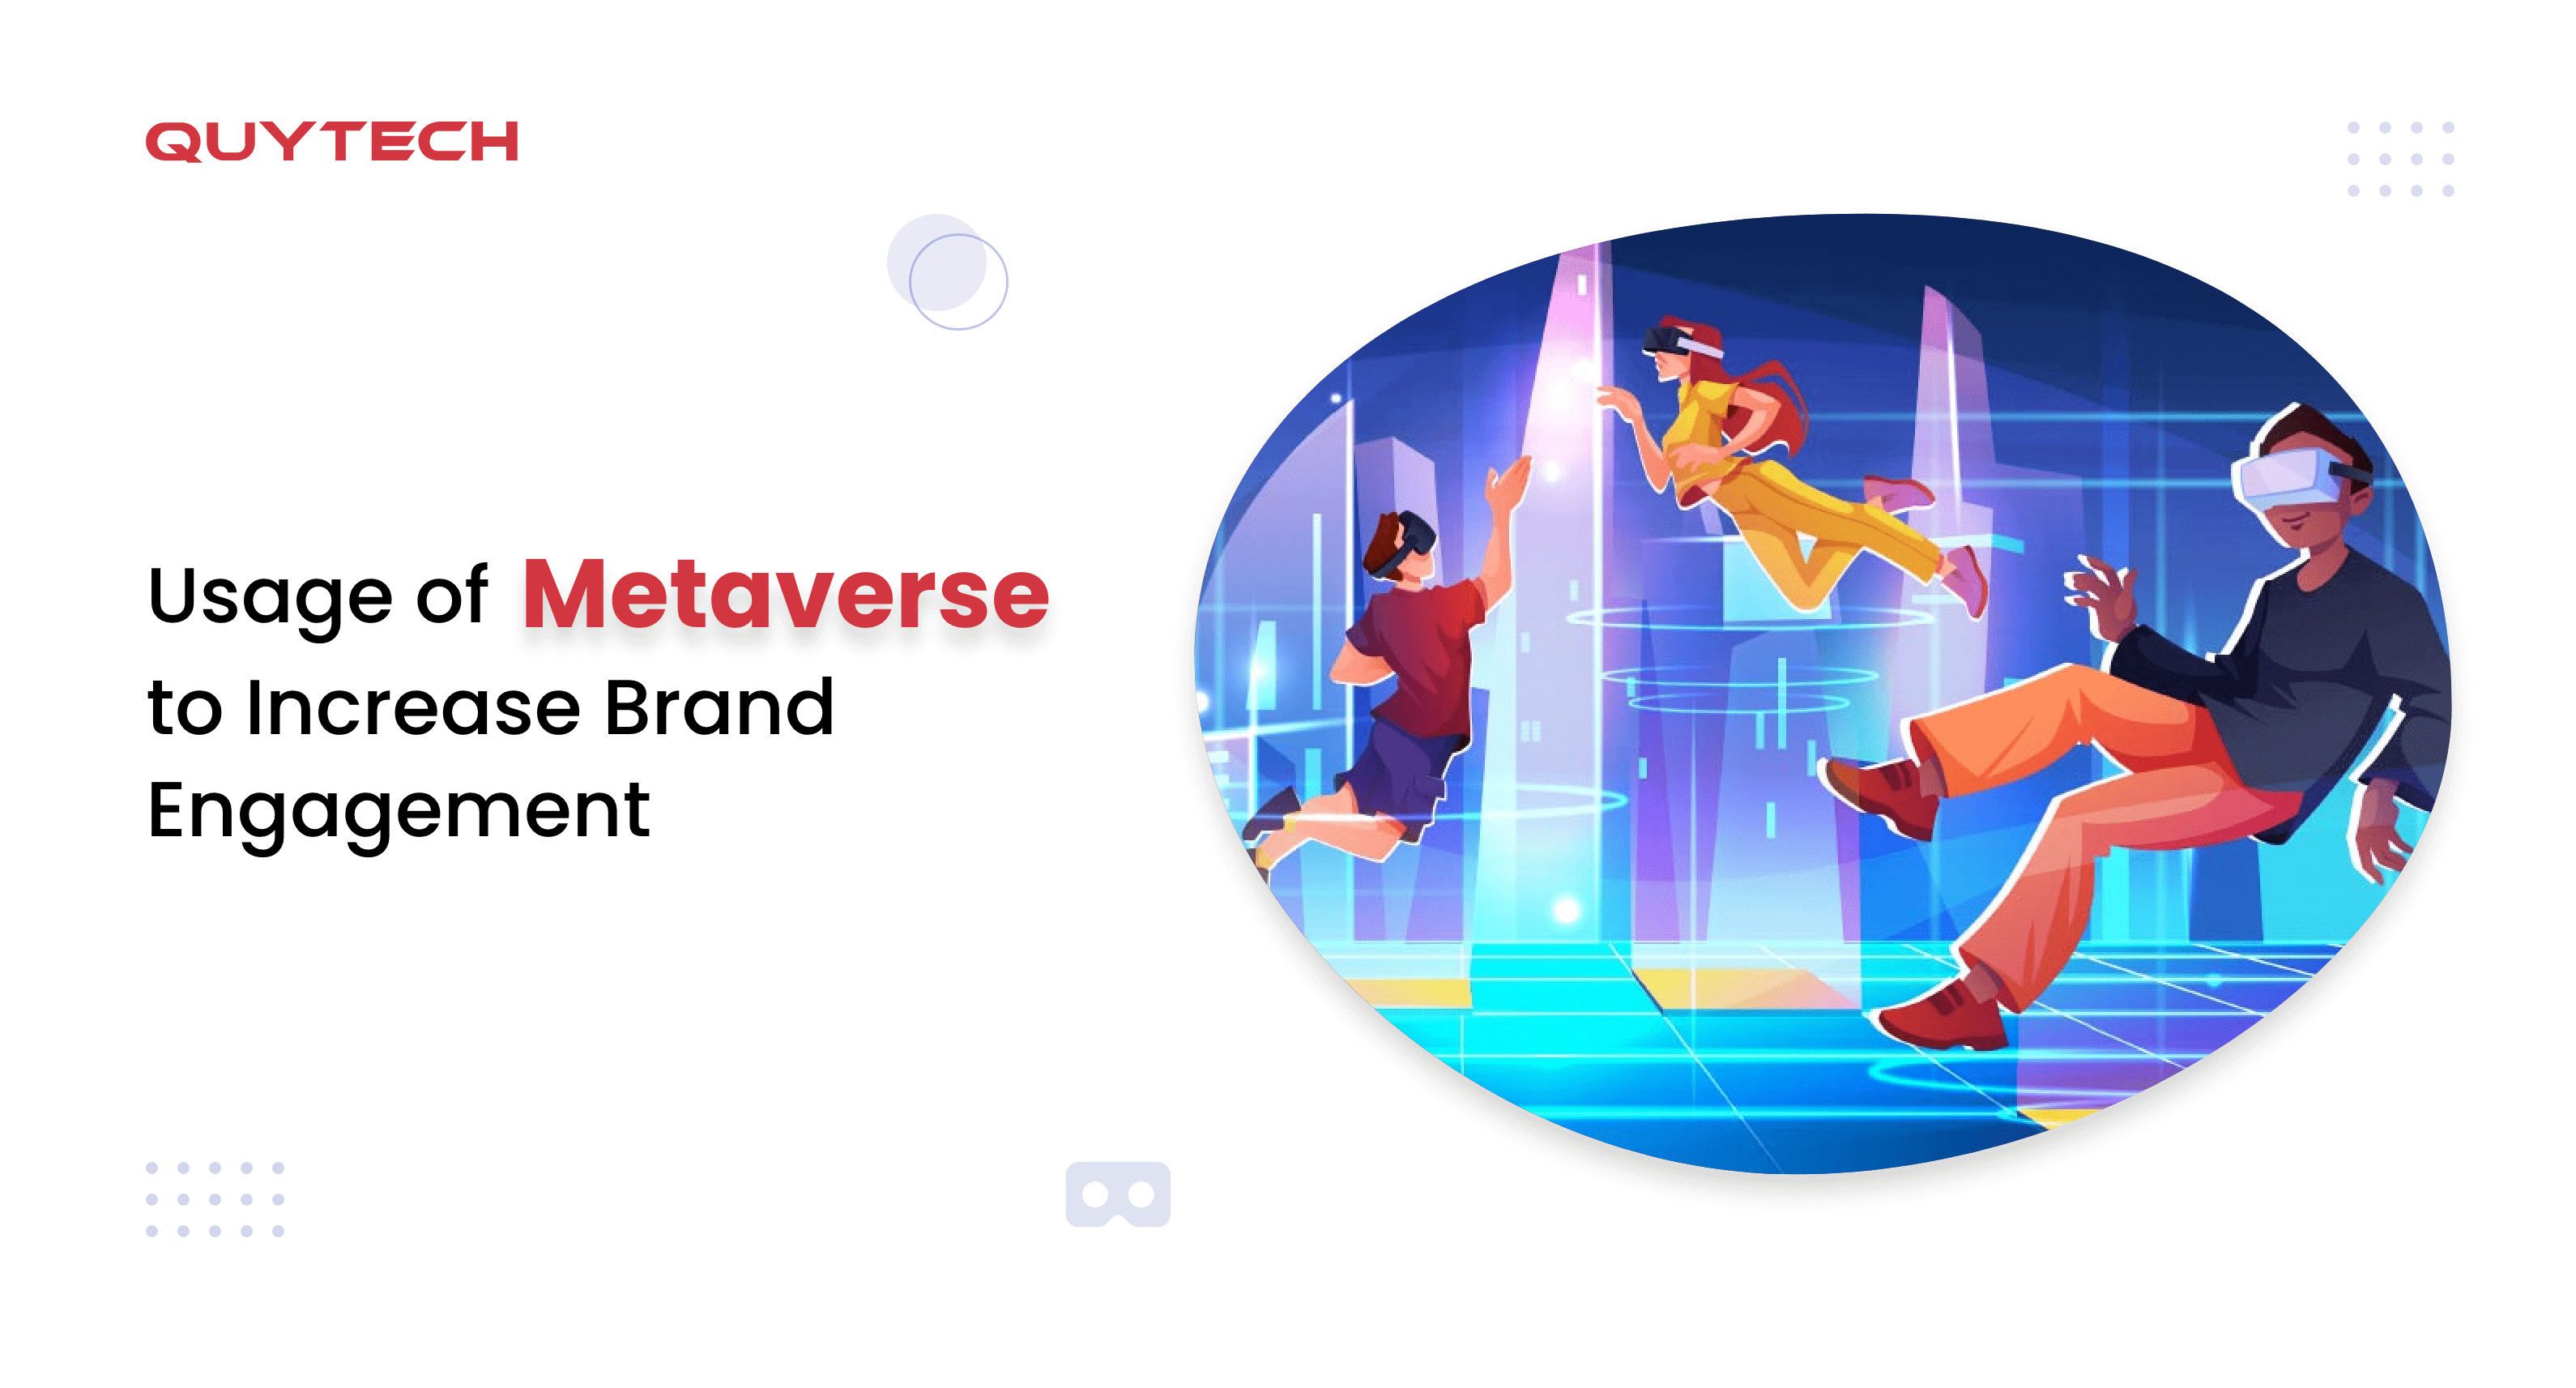 Usage of Metaverse to Increase Brand Engagement